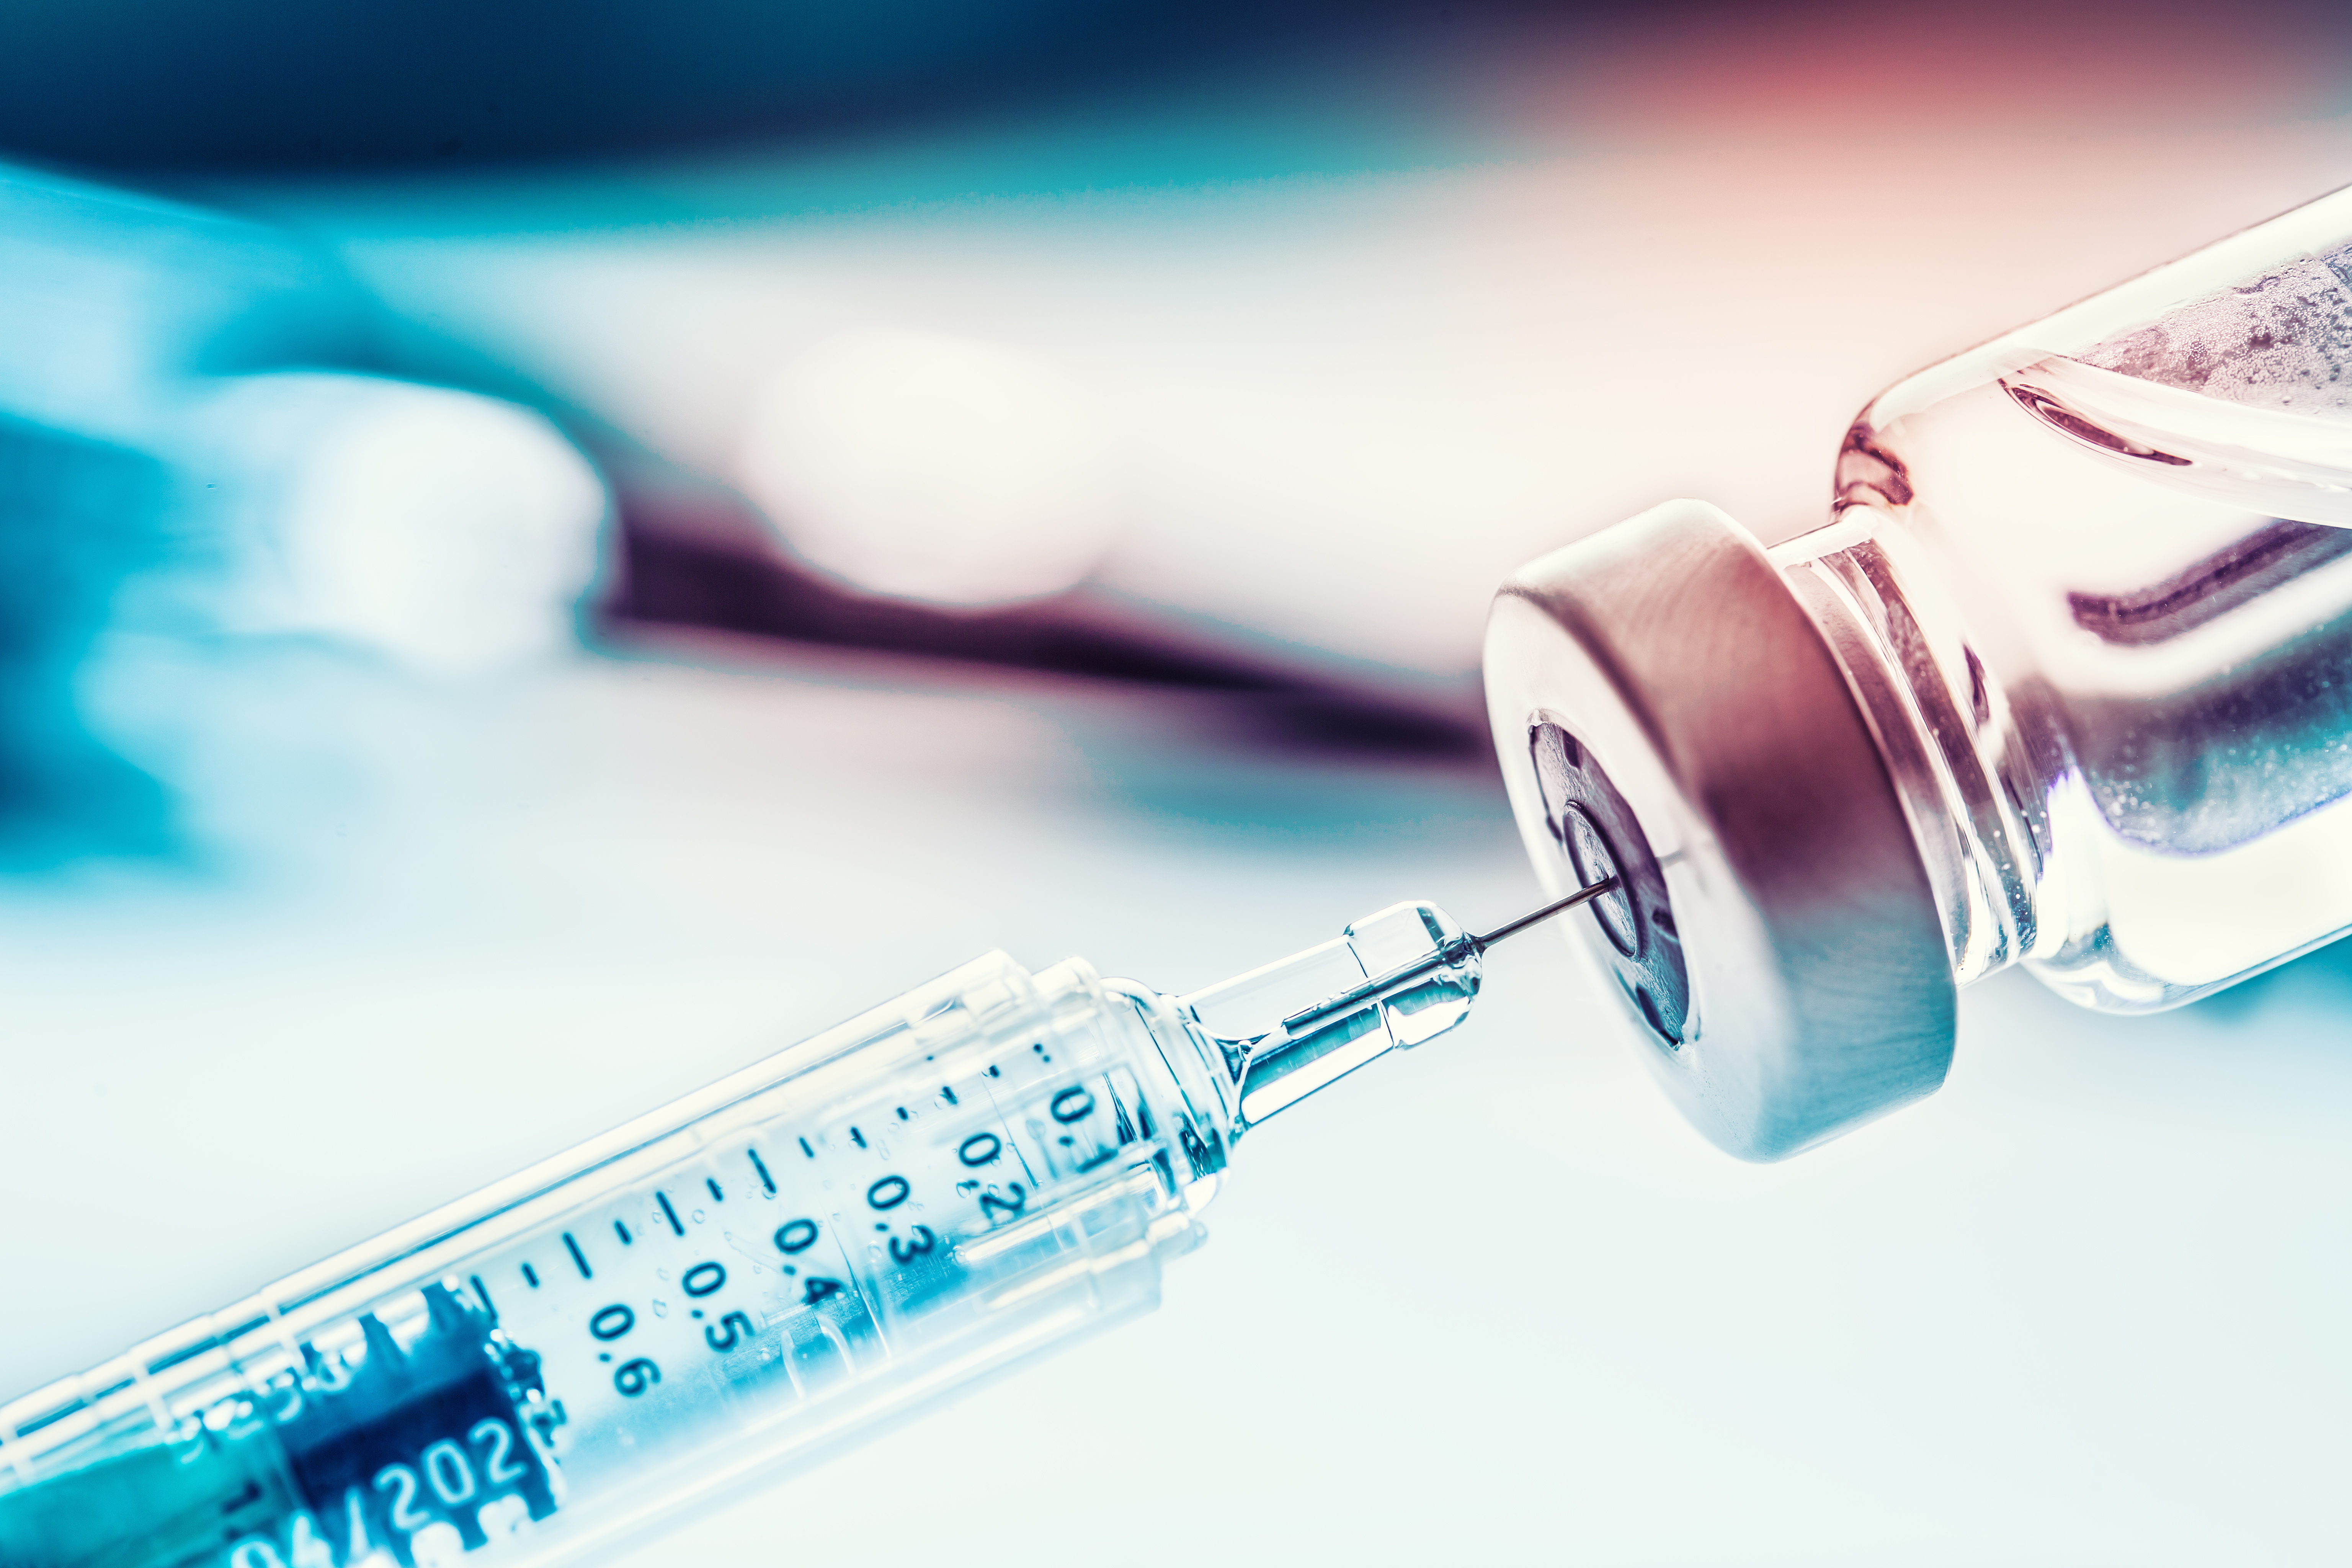 Sprawozdanie specjalne 19/2022: Unijne zamówienia szczepionek przeciwko COVID-19 – Mimo początkowych trudności zapewniono wystarczające ilości dawek, lecz proces zamówień nie został odpowiednio przeanalizowany